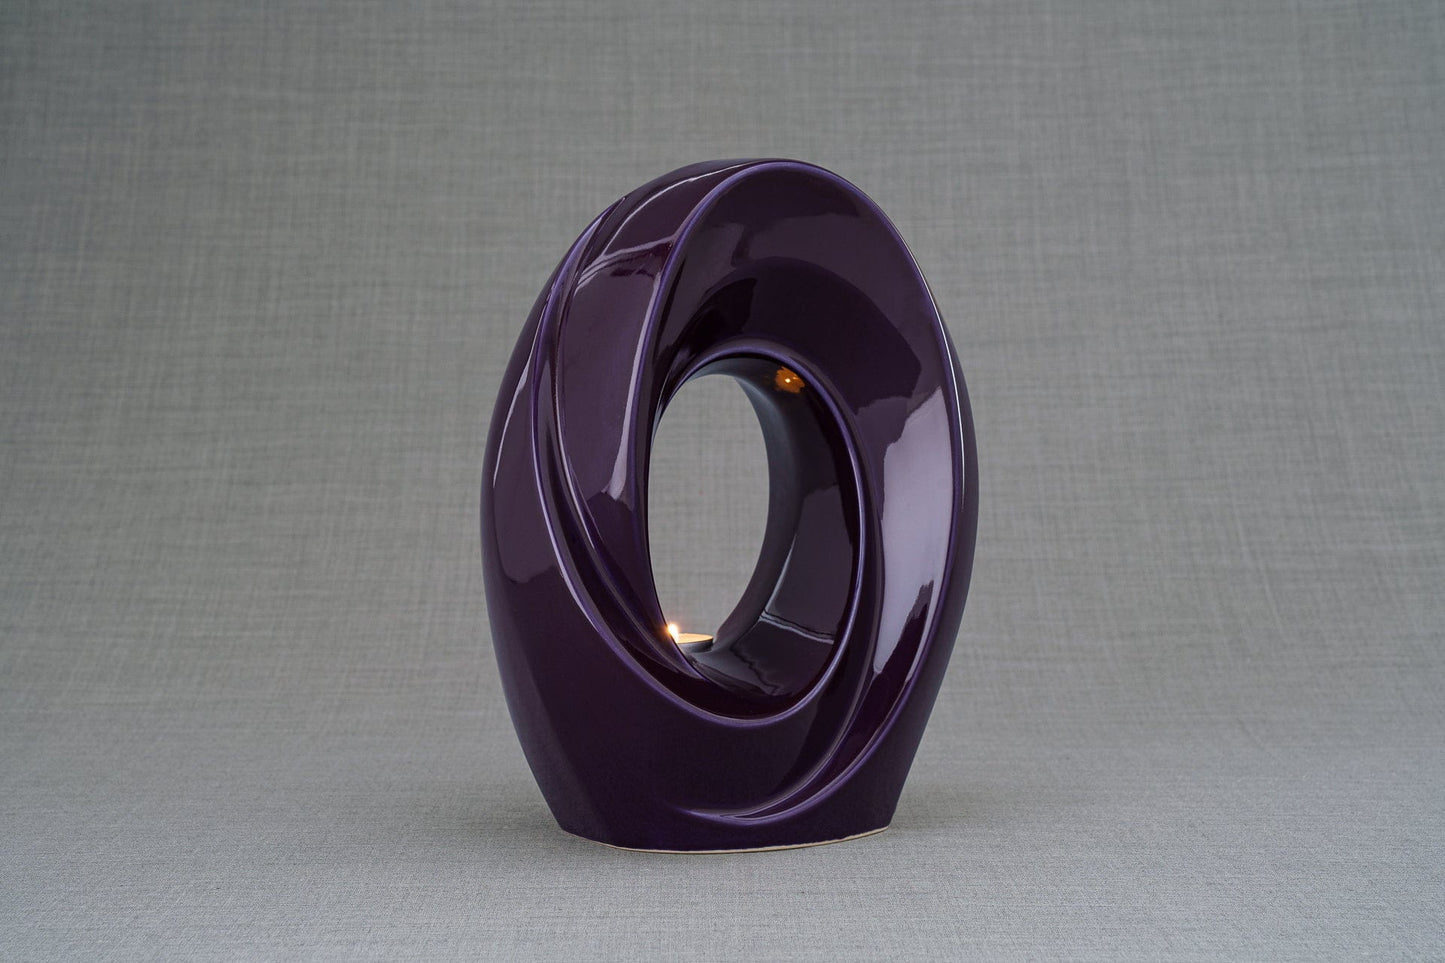 Pulvis Art Urns Adult Size Urn Handmade Cremation Urn for Ashes "The Passage" - Large | Violet | Ceramic